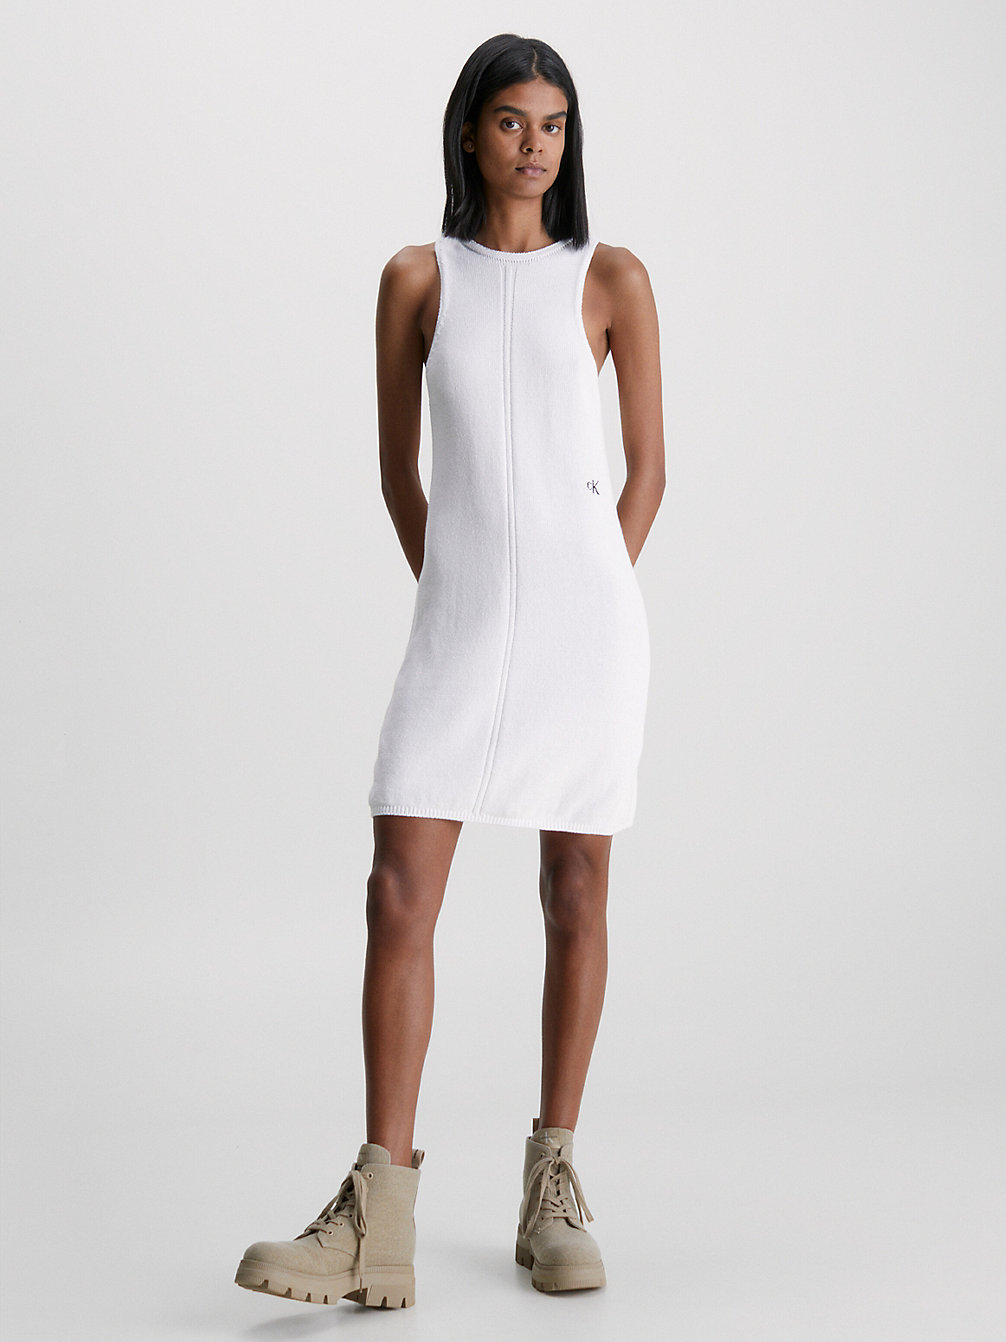 BRIGHT WHITE > Sukienka Bez Rękawów Z Dzianiny Bawełnianej > undefined Kobiety - Calvin Klein